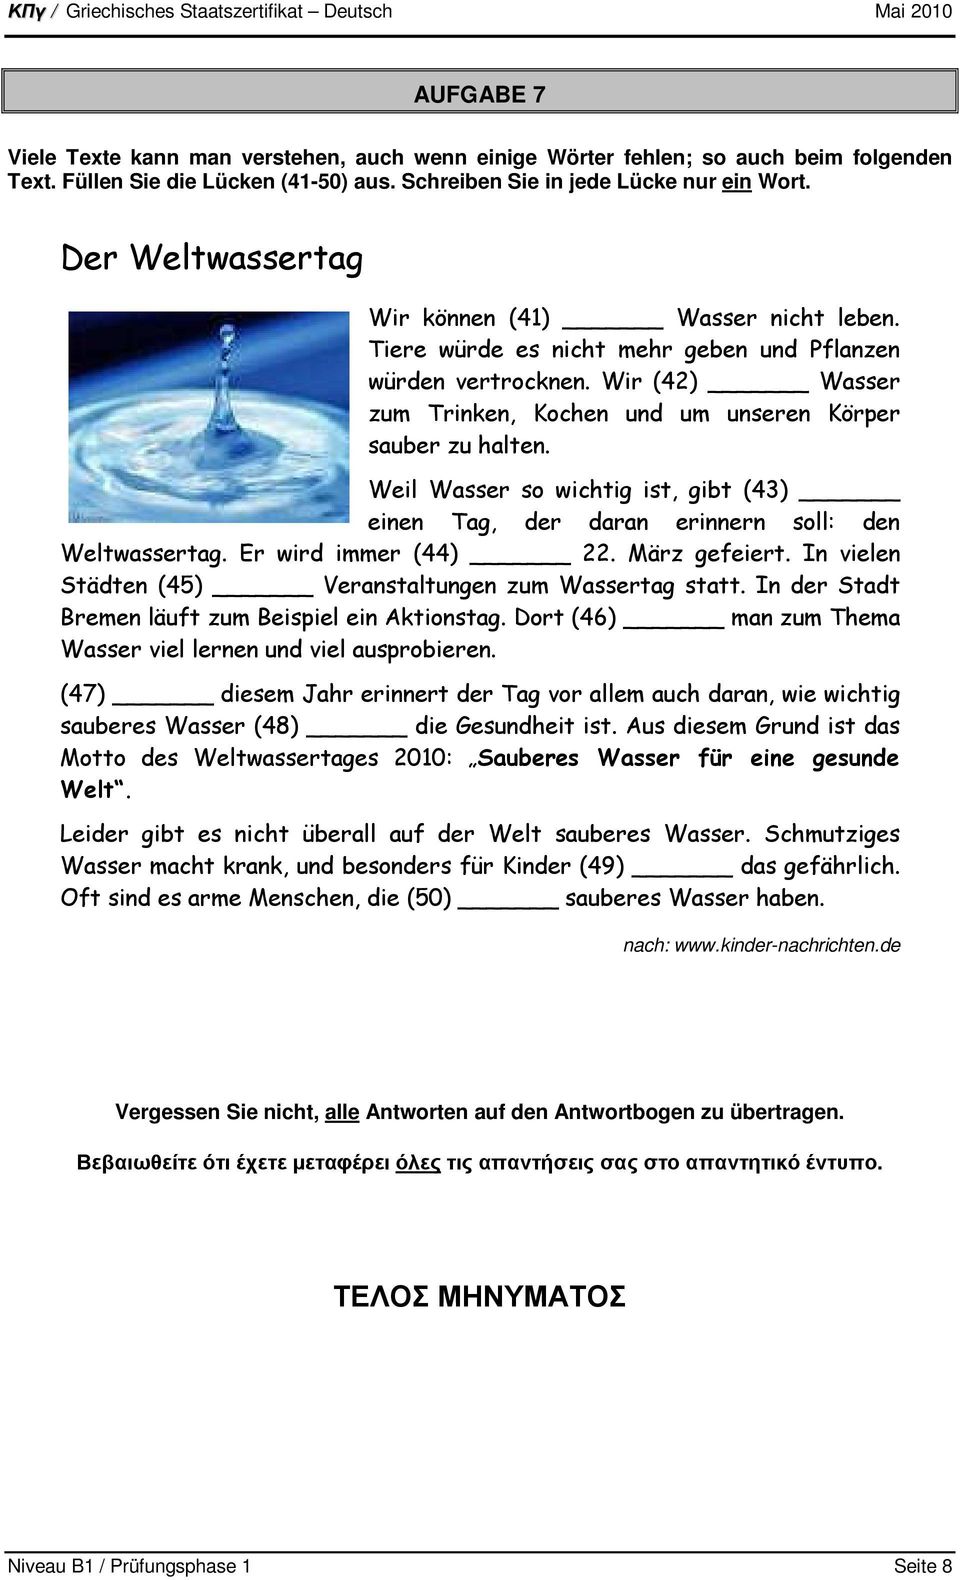 Weil Wasser so wichtig ist, gibt (43) einen Tag, der daran erinnern soll: den Weltwassertag. Er wird immer (44) 22. März gefeiert. In vielen Städten (45) Veranstaltungen zum Wassertag statt.